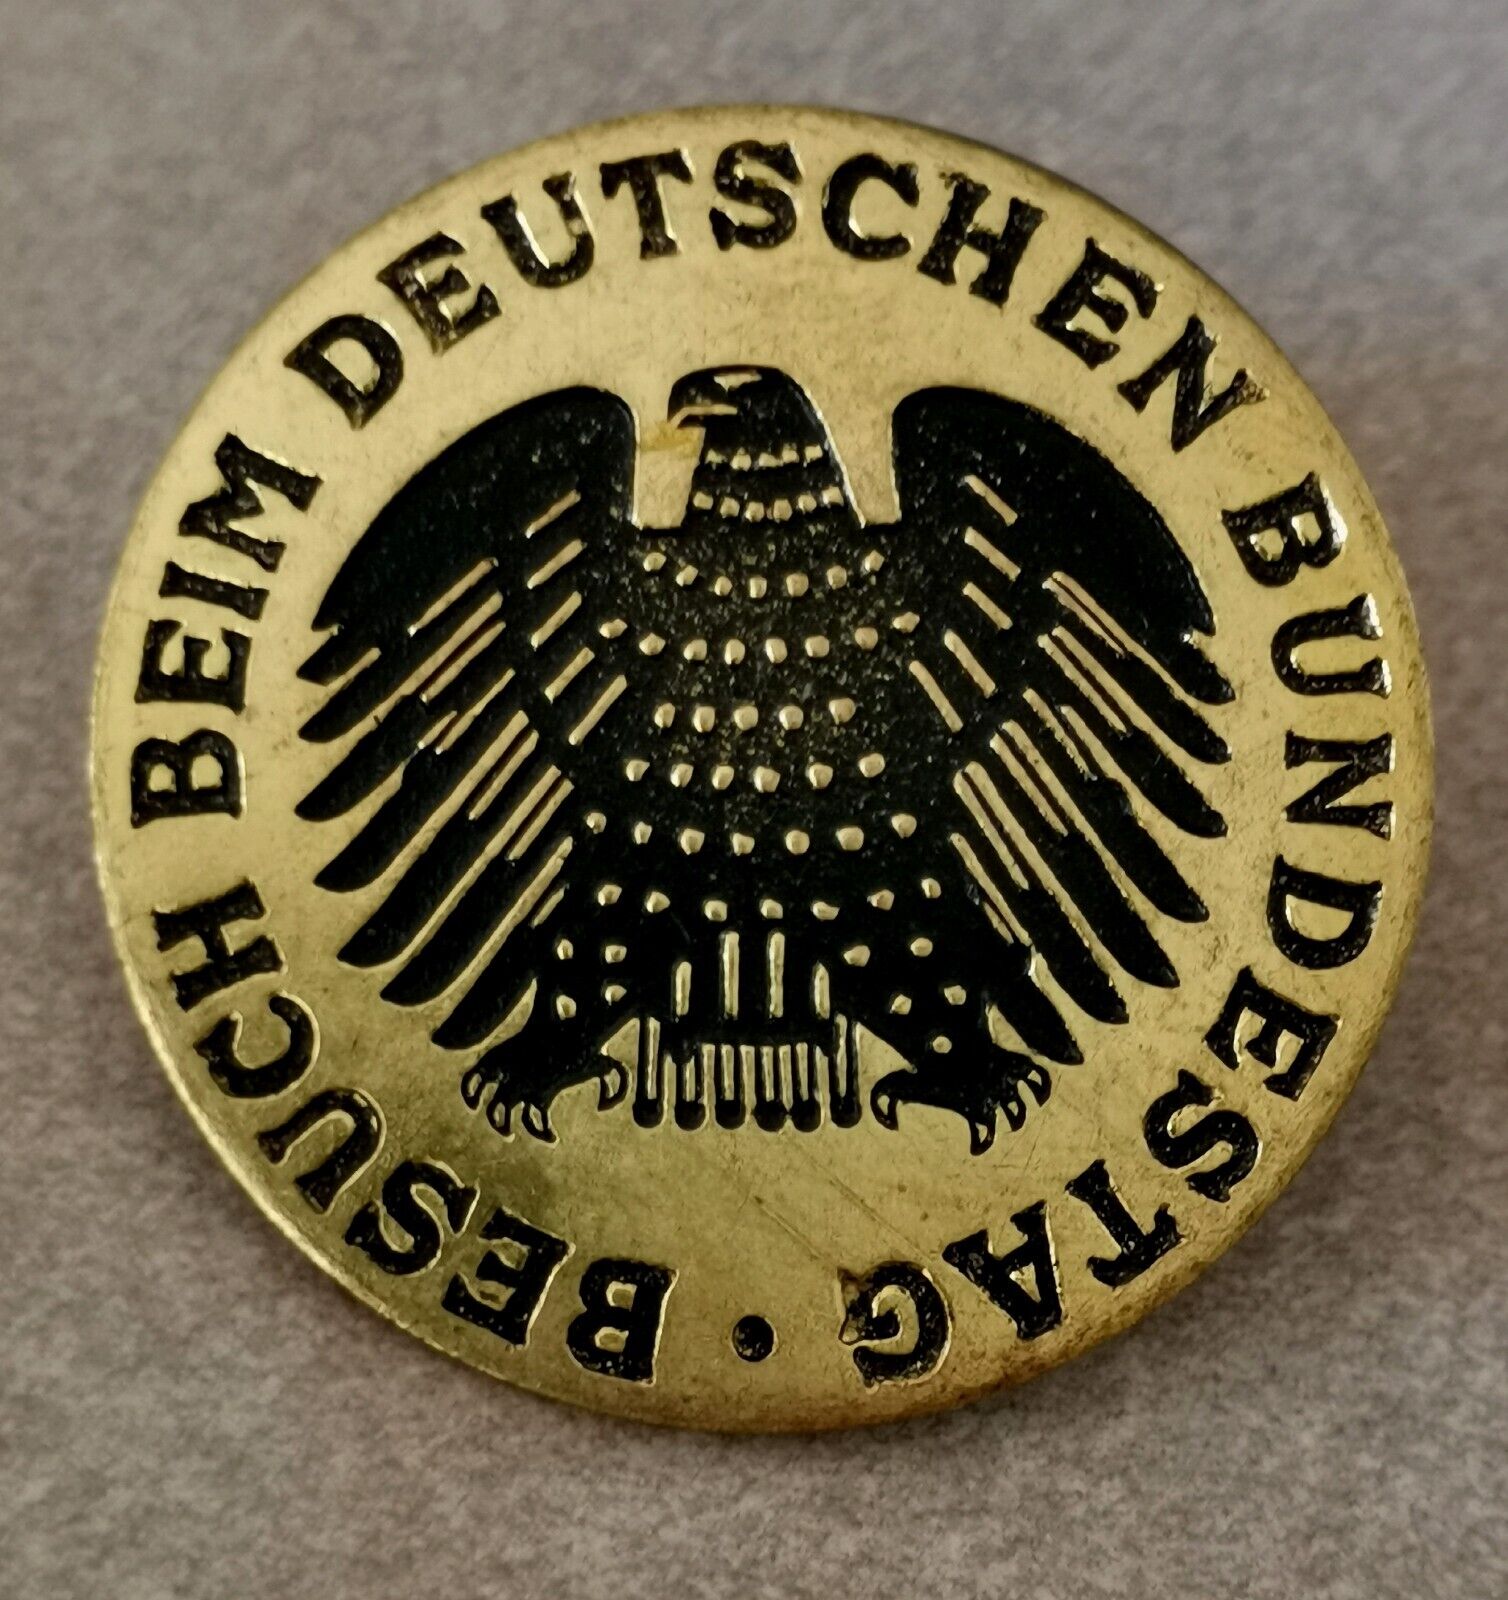 Vintage-German, Besuch Beim Deutschen Bundestag Pinback Pin